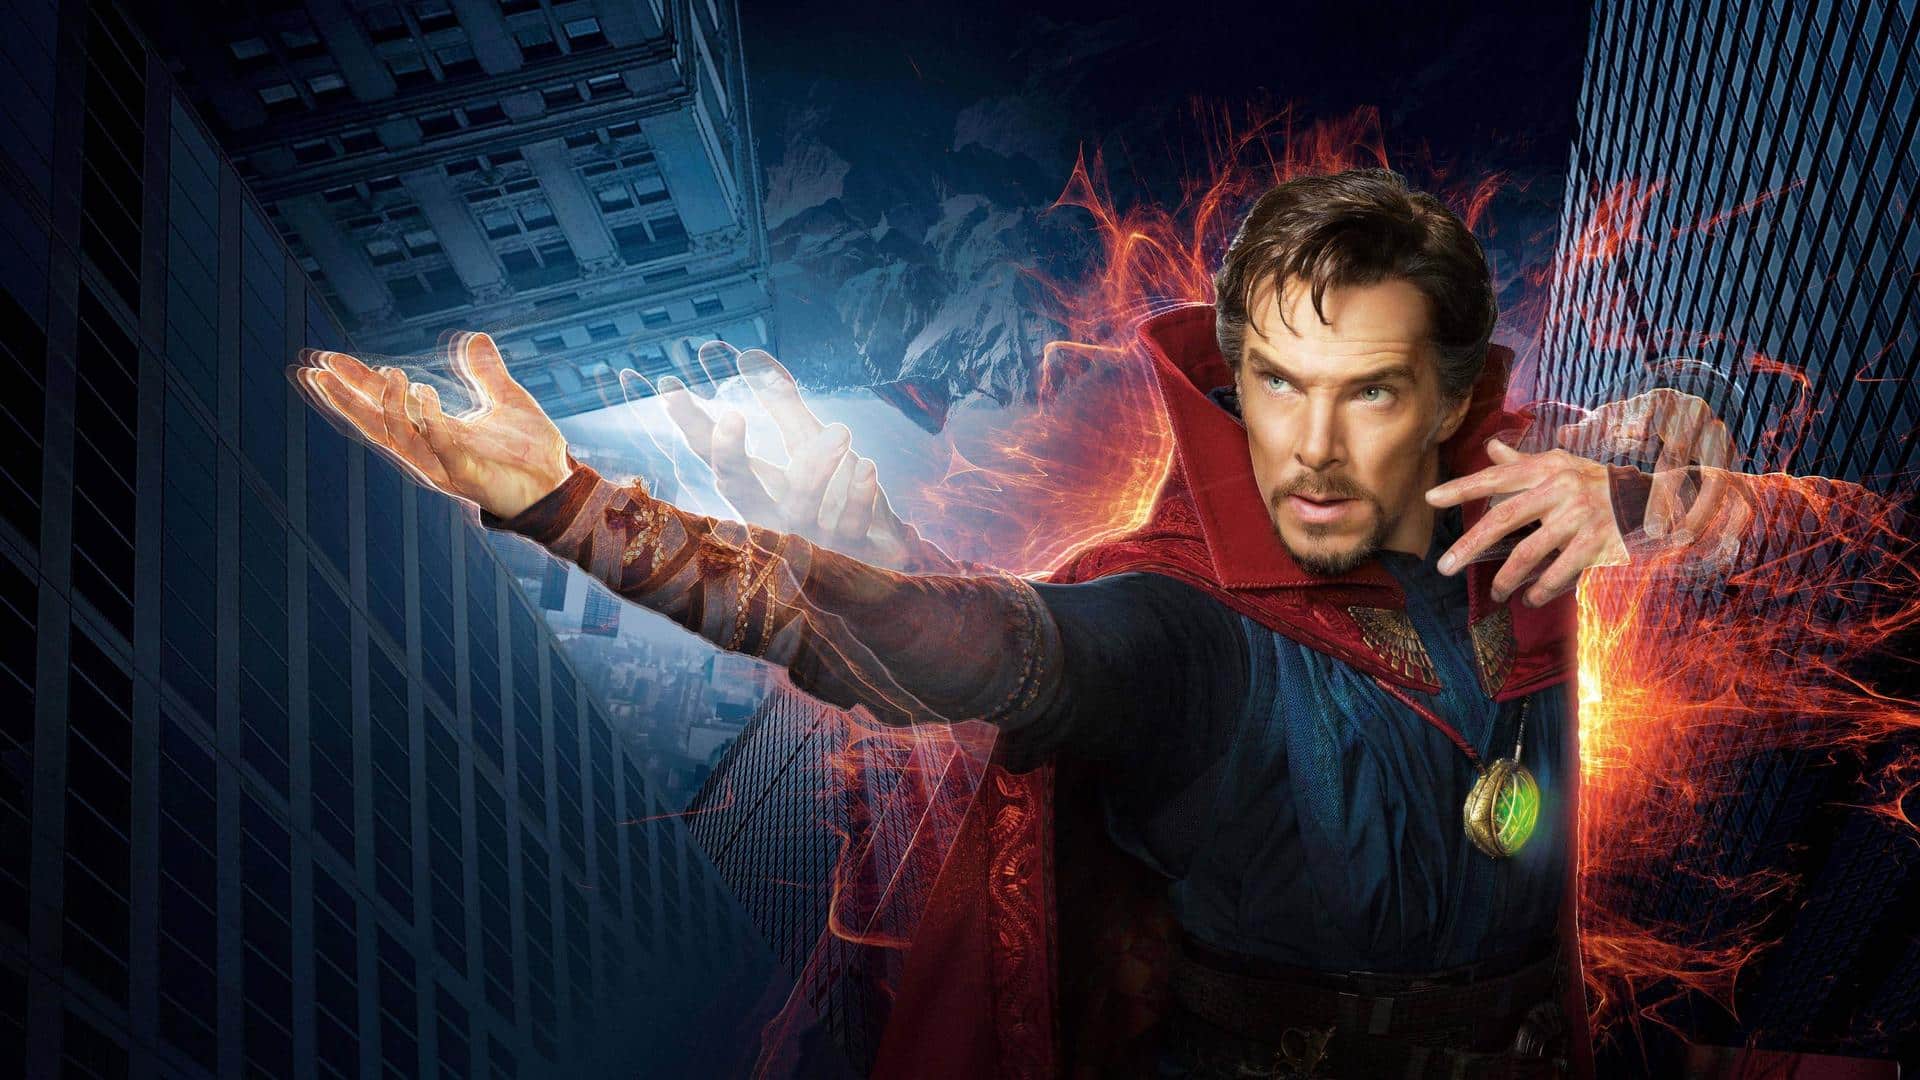 Avengers: Endgame – Doctor Strange diventerà il mago supremo? [Teoria]